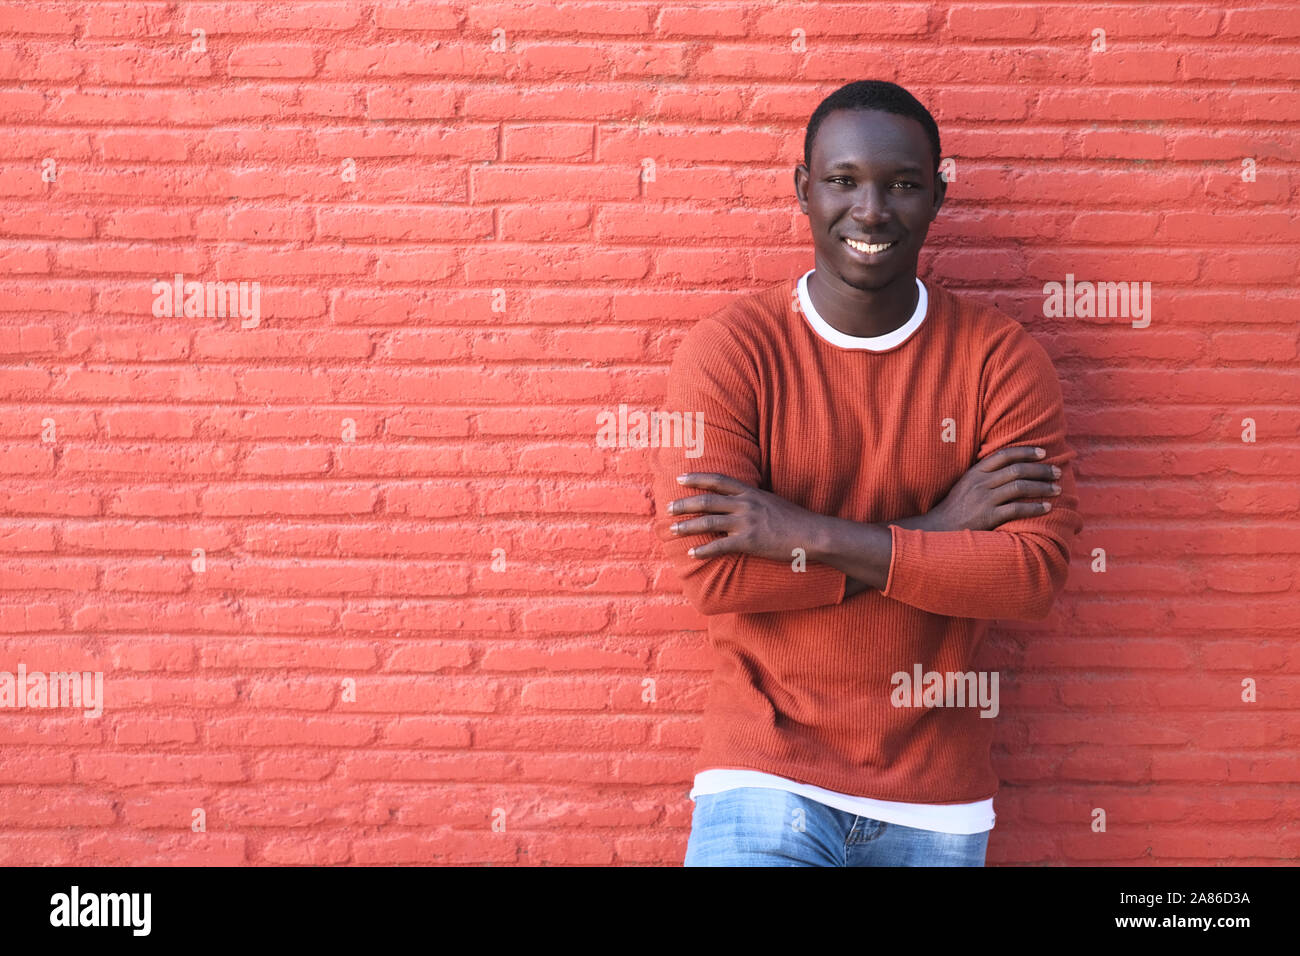 Portrait der Afrikanischen jungen Mann mit Kamera und lächelnd. Kopieren Sie Speicherplatz auf rote Wand im Hintergrund. Stockfoto